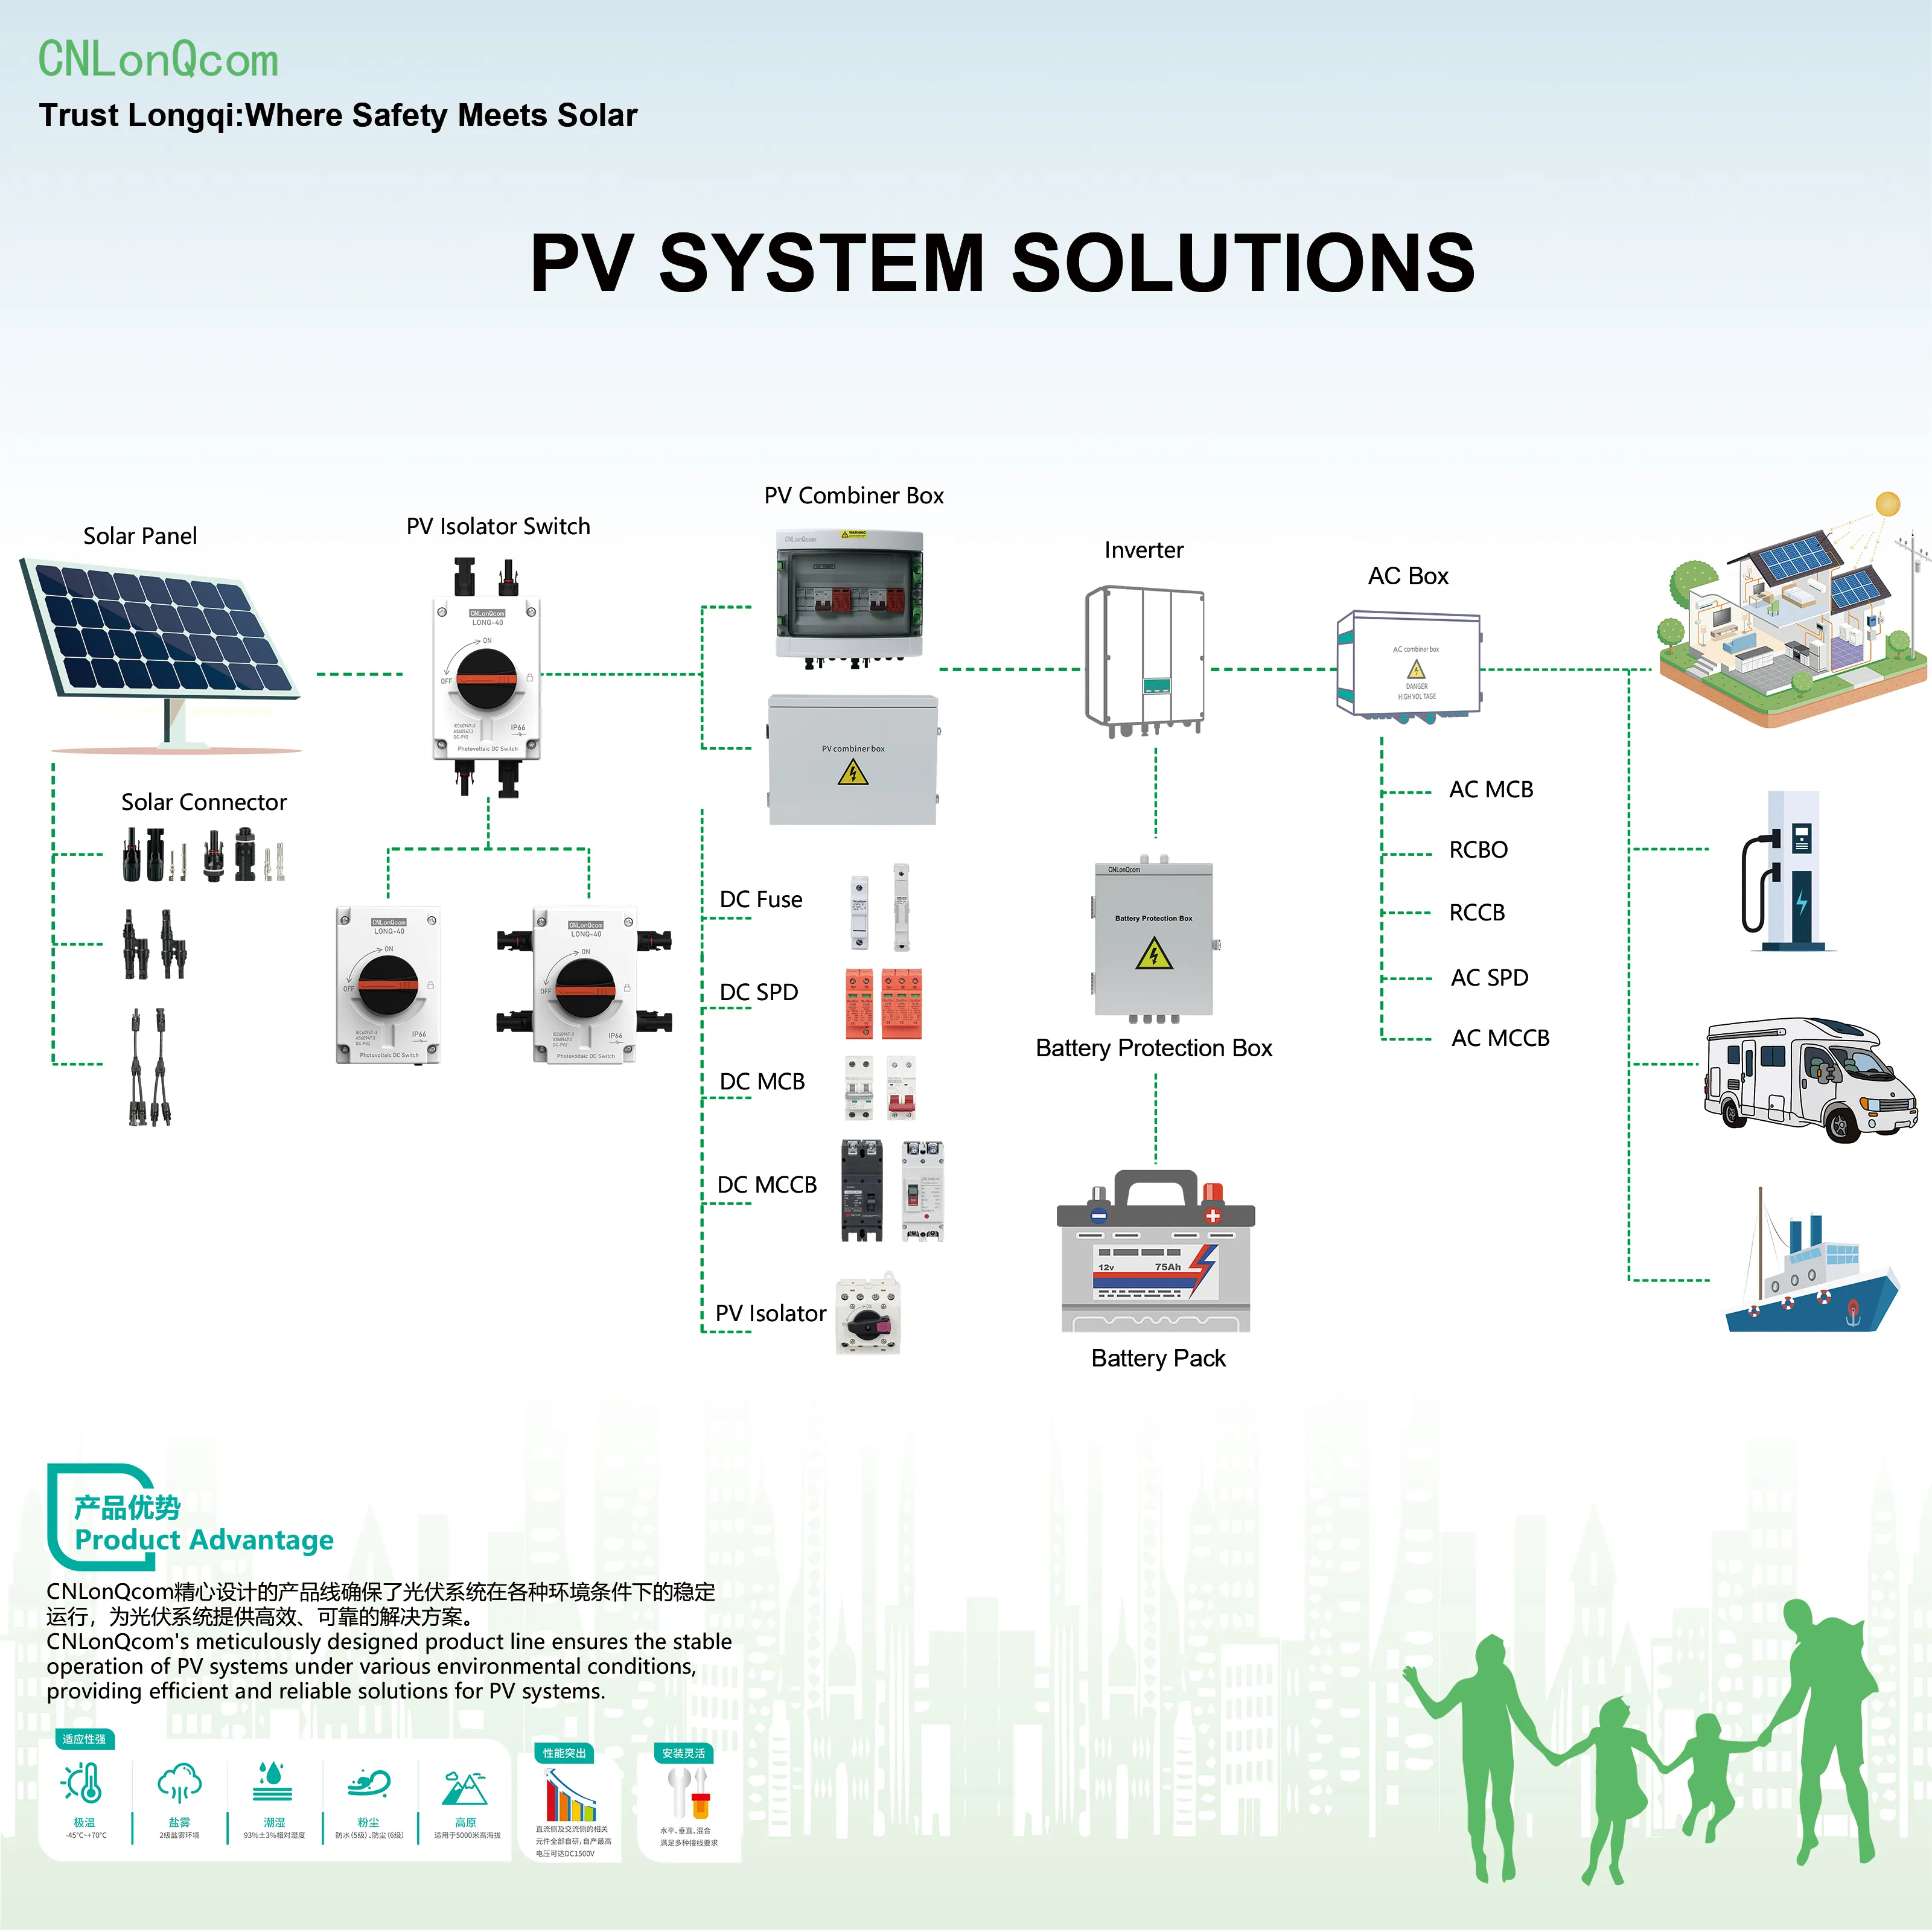 Sistem PV CNLonQcom: Eksplorasi Prinsip Kerja Energi Surya